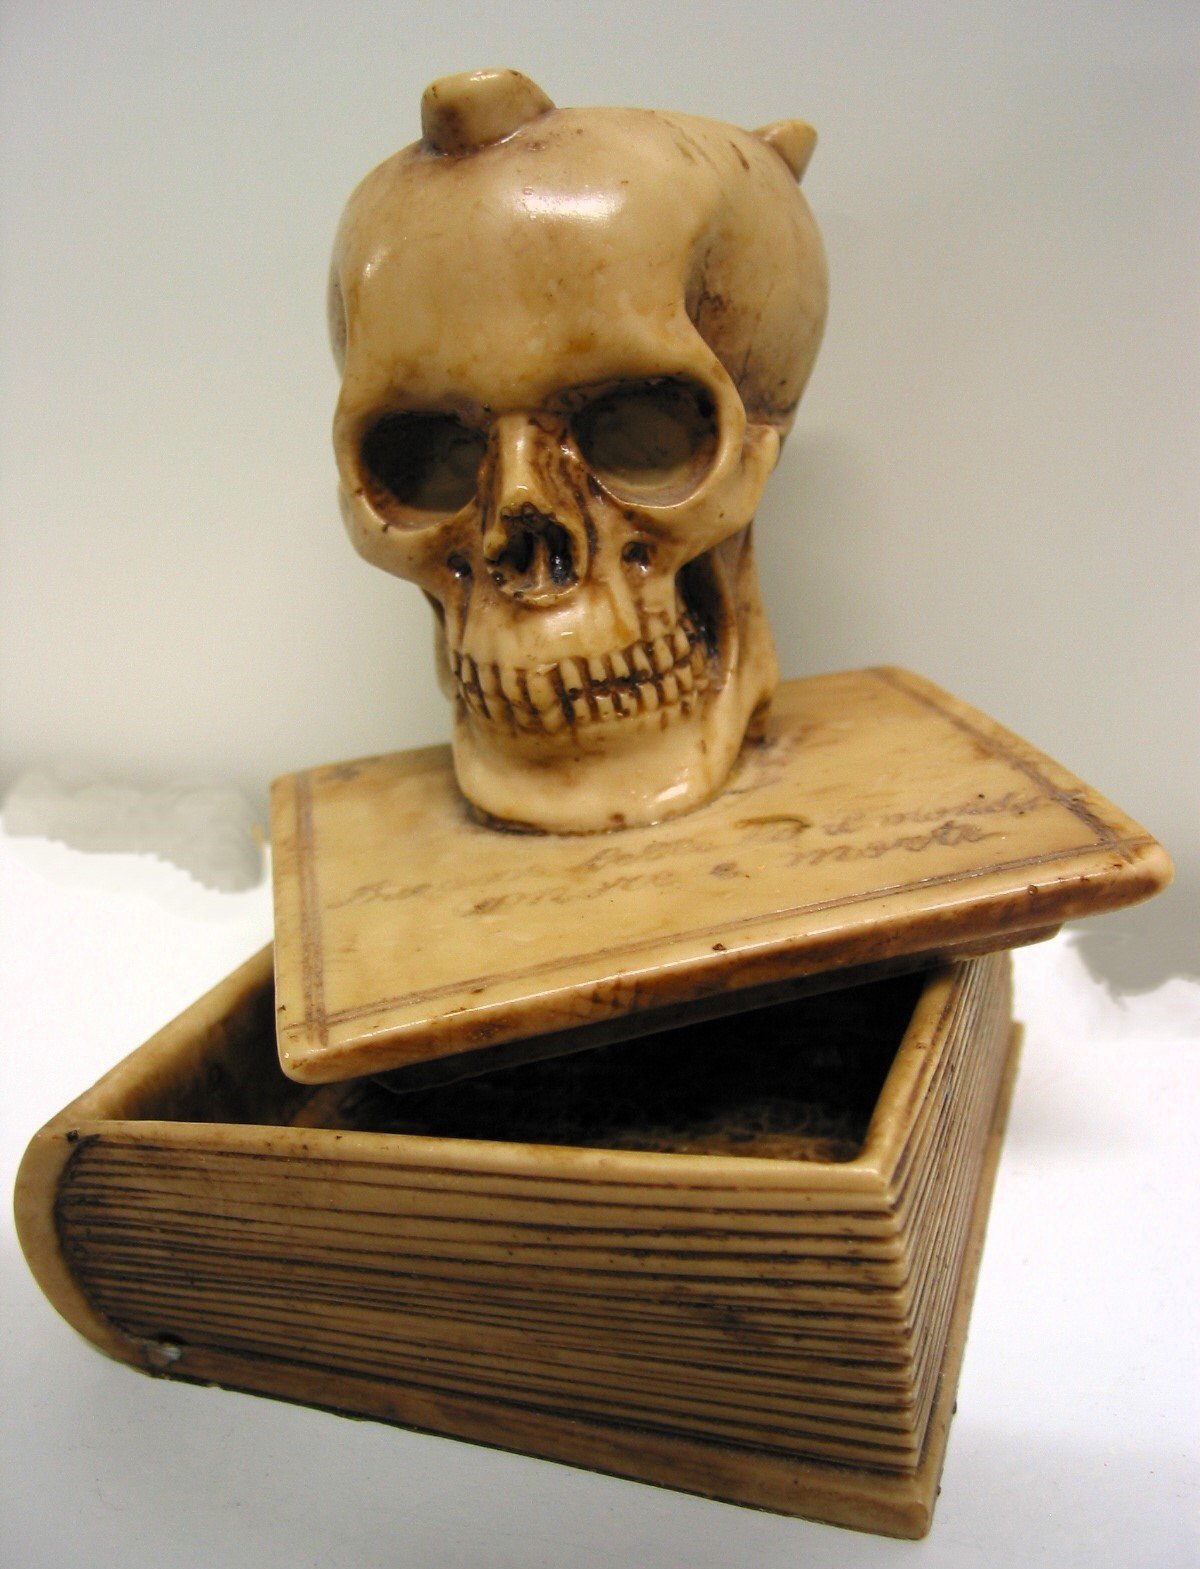 Aschenbecher 'Totenschädel auf Buch' (Museum für Sepulkralkultur CC0)